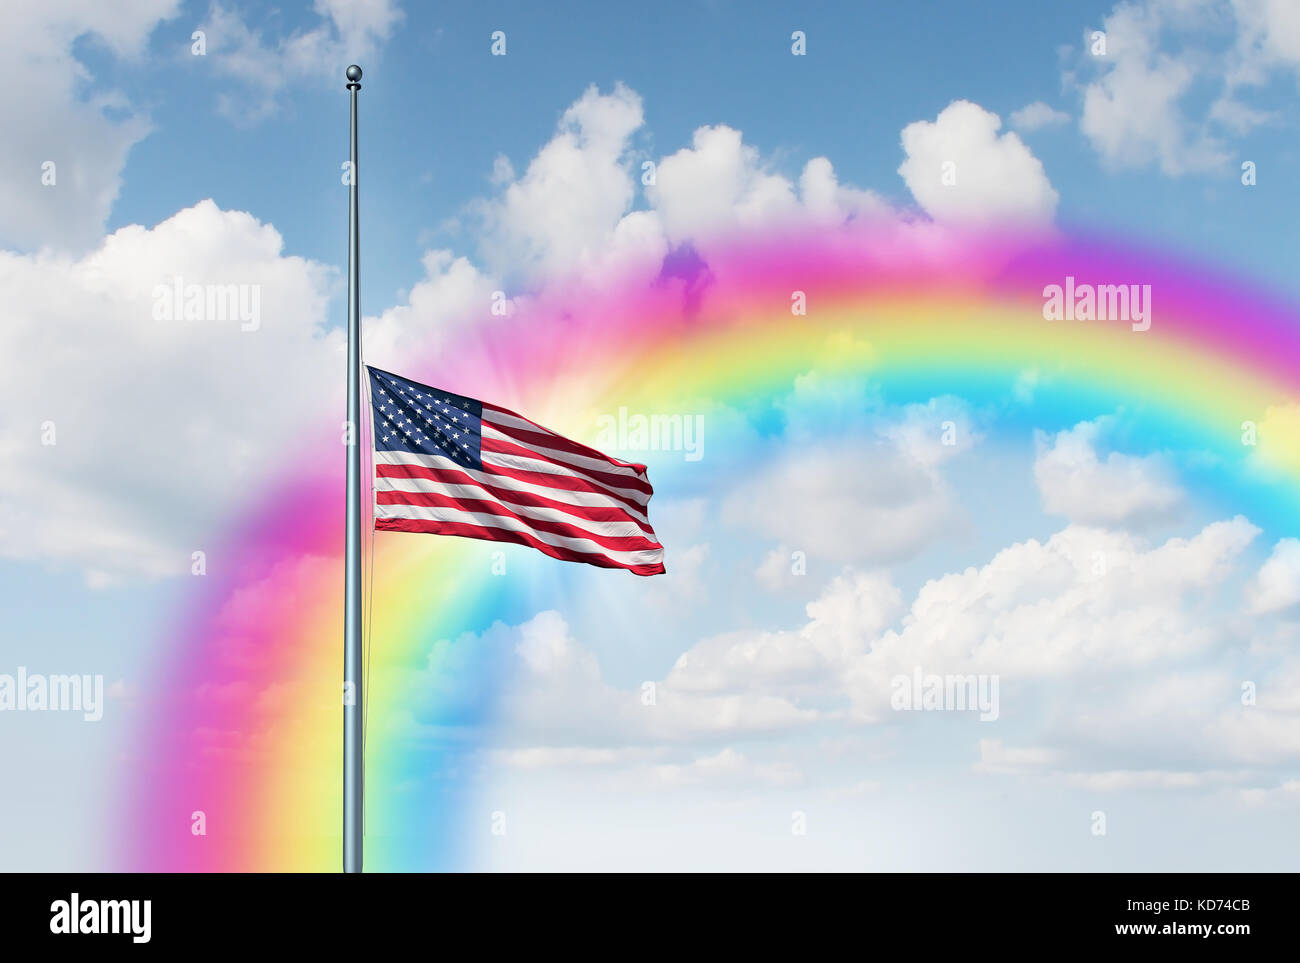 La metà del montante di bandiera americana speranza rainbow nozione come un simbolo degli Stati Uniti volare a bassa quota sul pennone con un bagliore di sun. Foto Stock